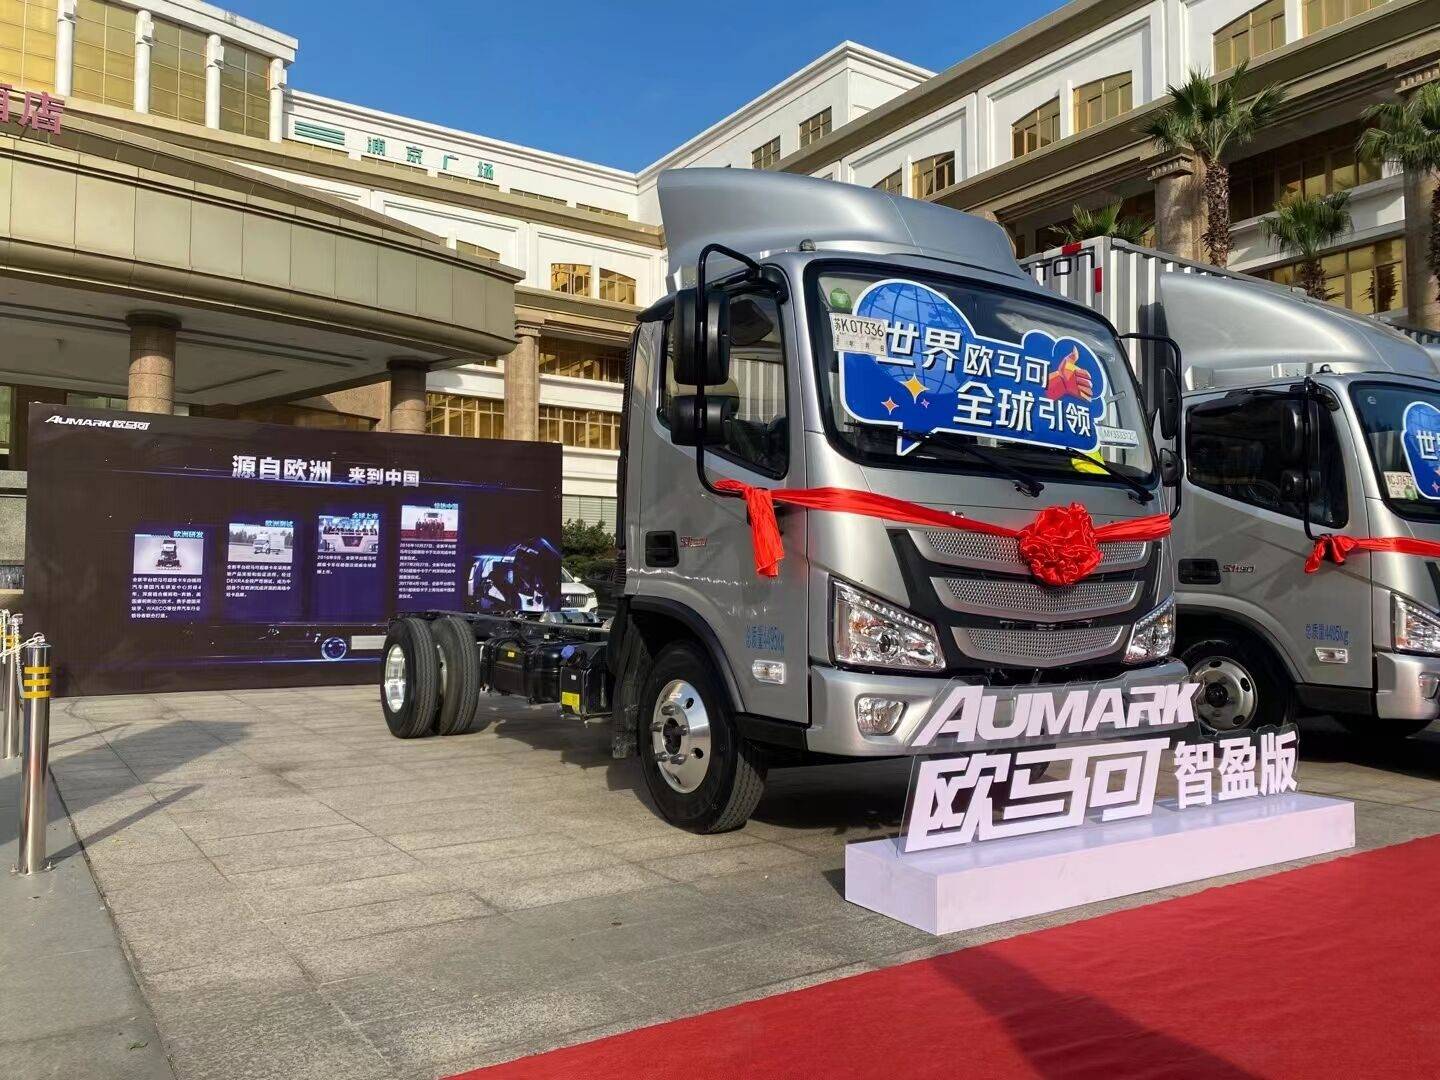 福康f2.5动力 福田欧马可s1超级卡车智盈版深圳上市 经典匹配再升级